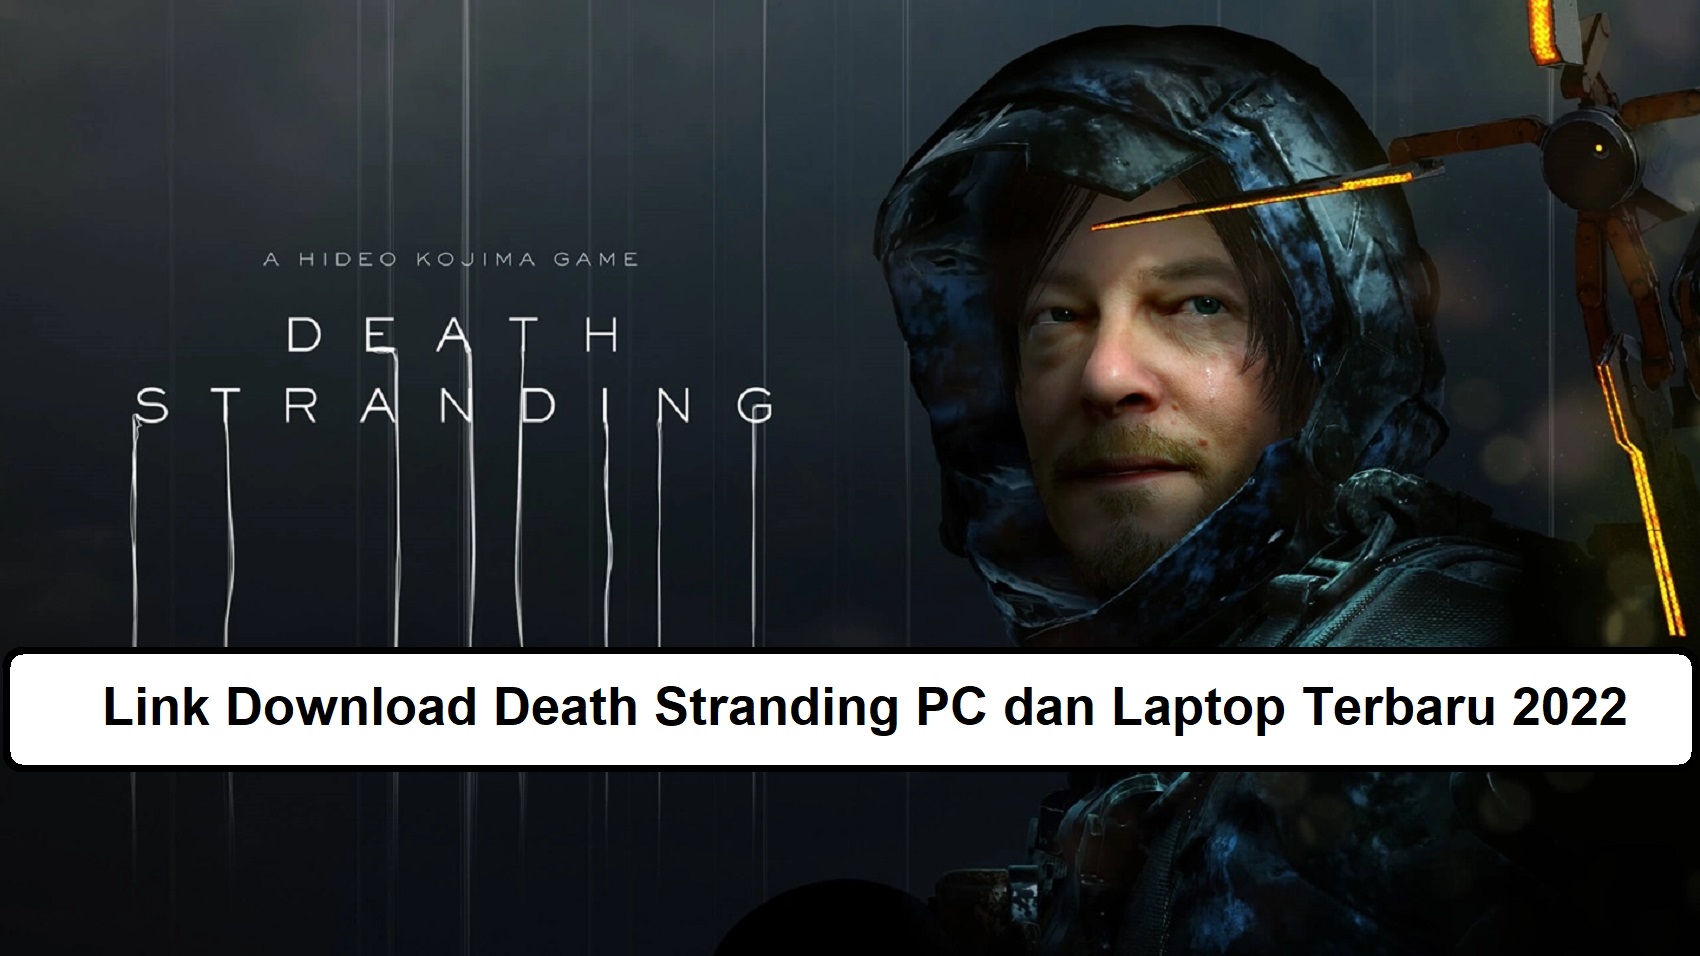 Link Download Death Stranding PC dan Laptop Terbaru 2022